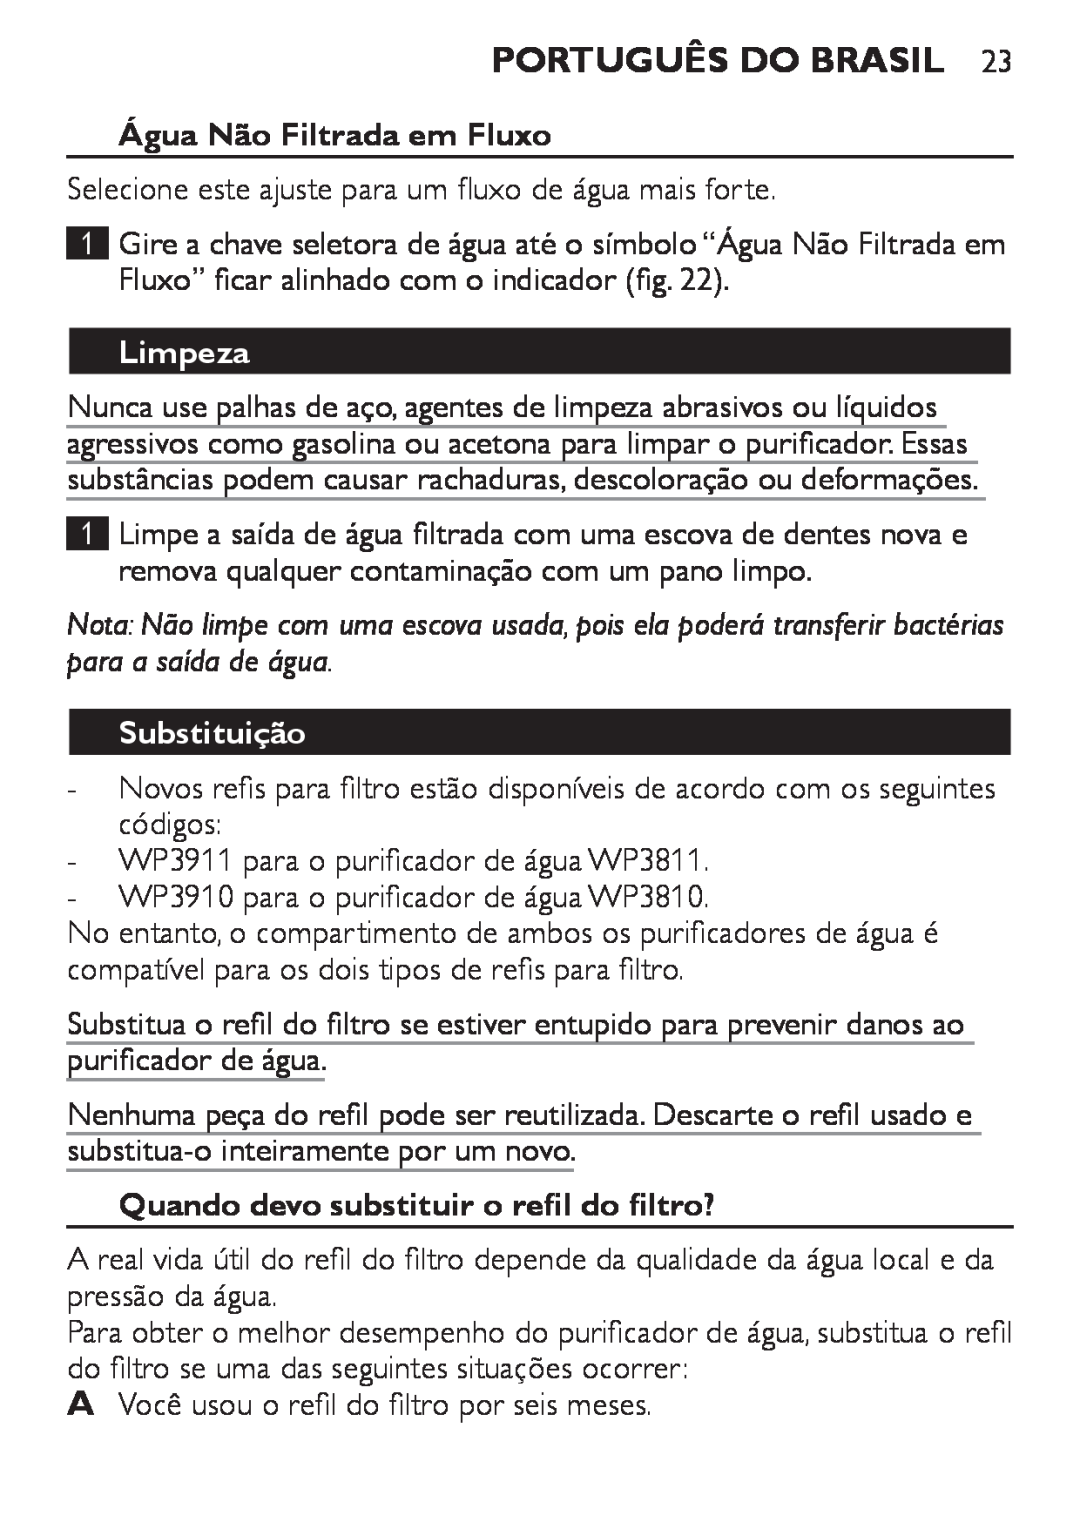 Philips WP3811, WP3810 manual Água Não Filtrada em Fluxo, Limpeza, Substituição, Quando devo substituir o refil do filtro? 